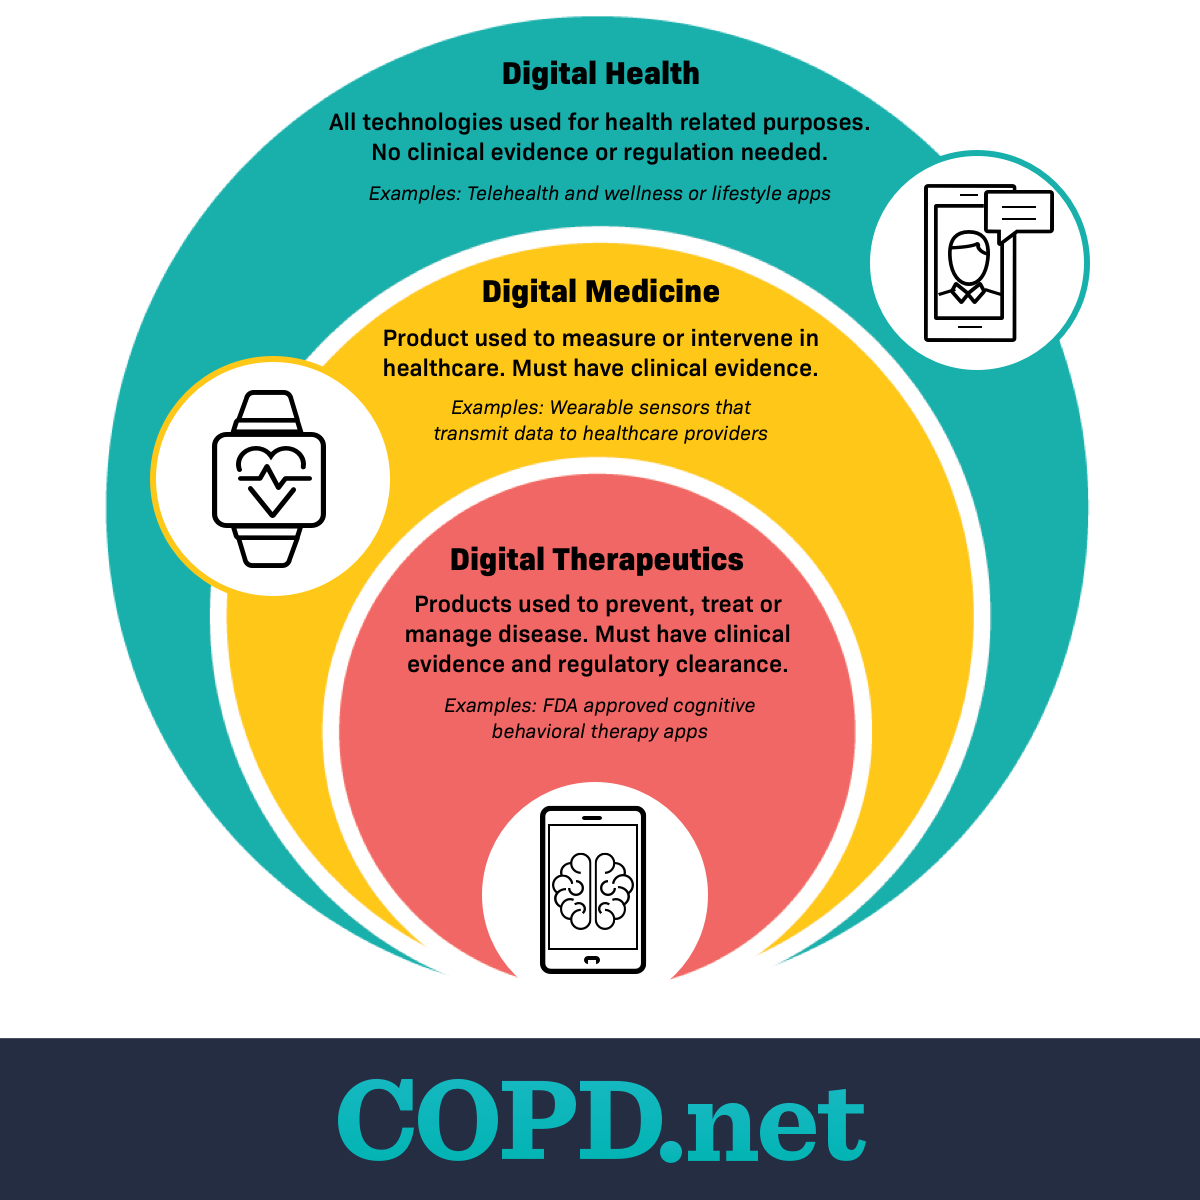 Digital therapeutics chart